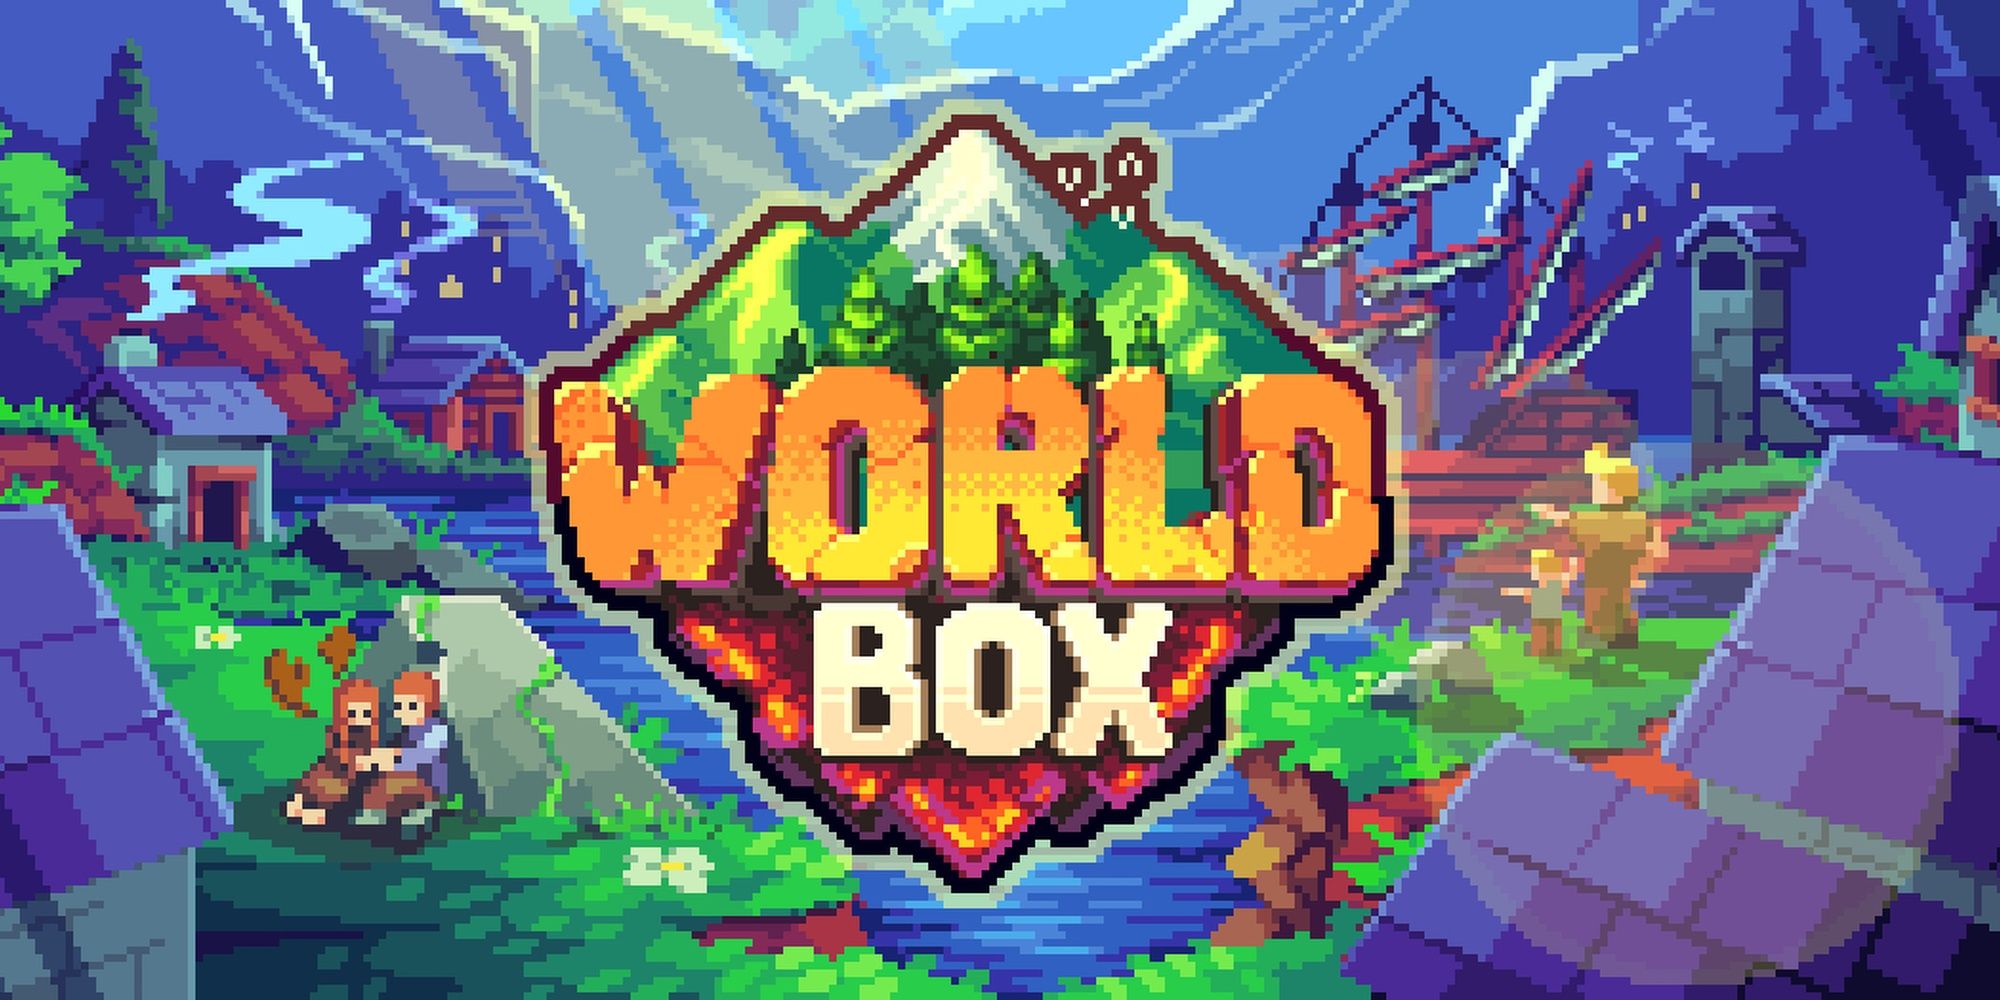 worldbox simulator